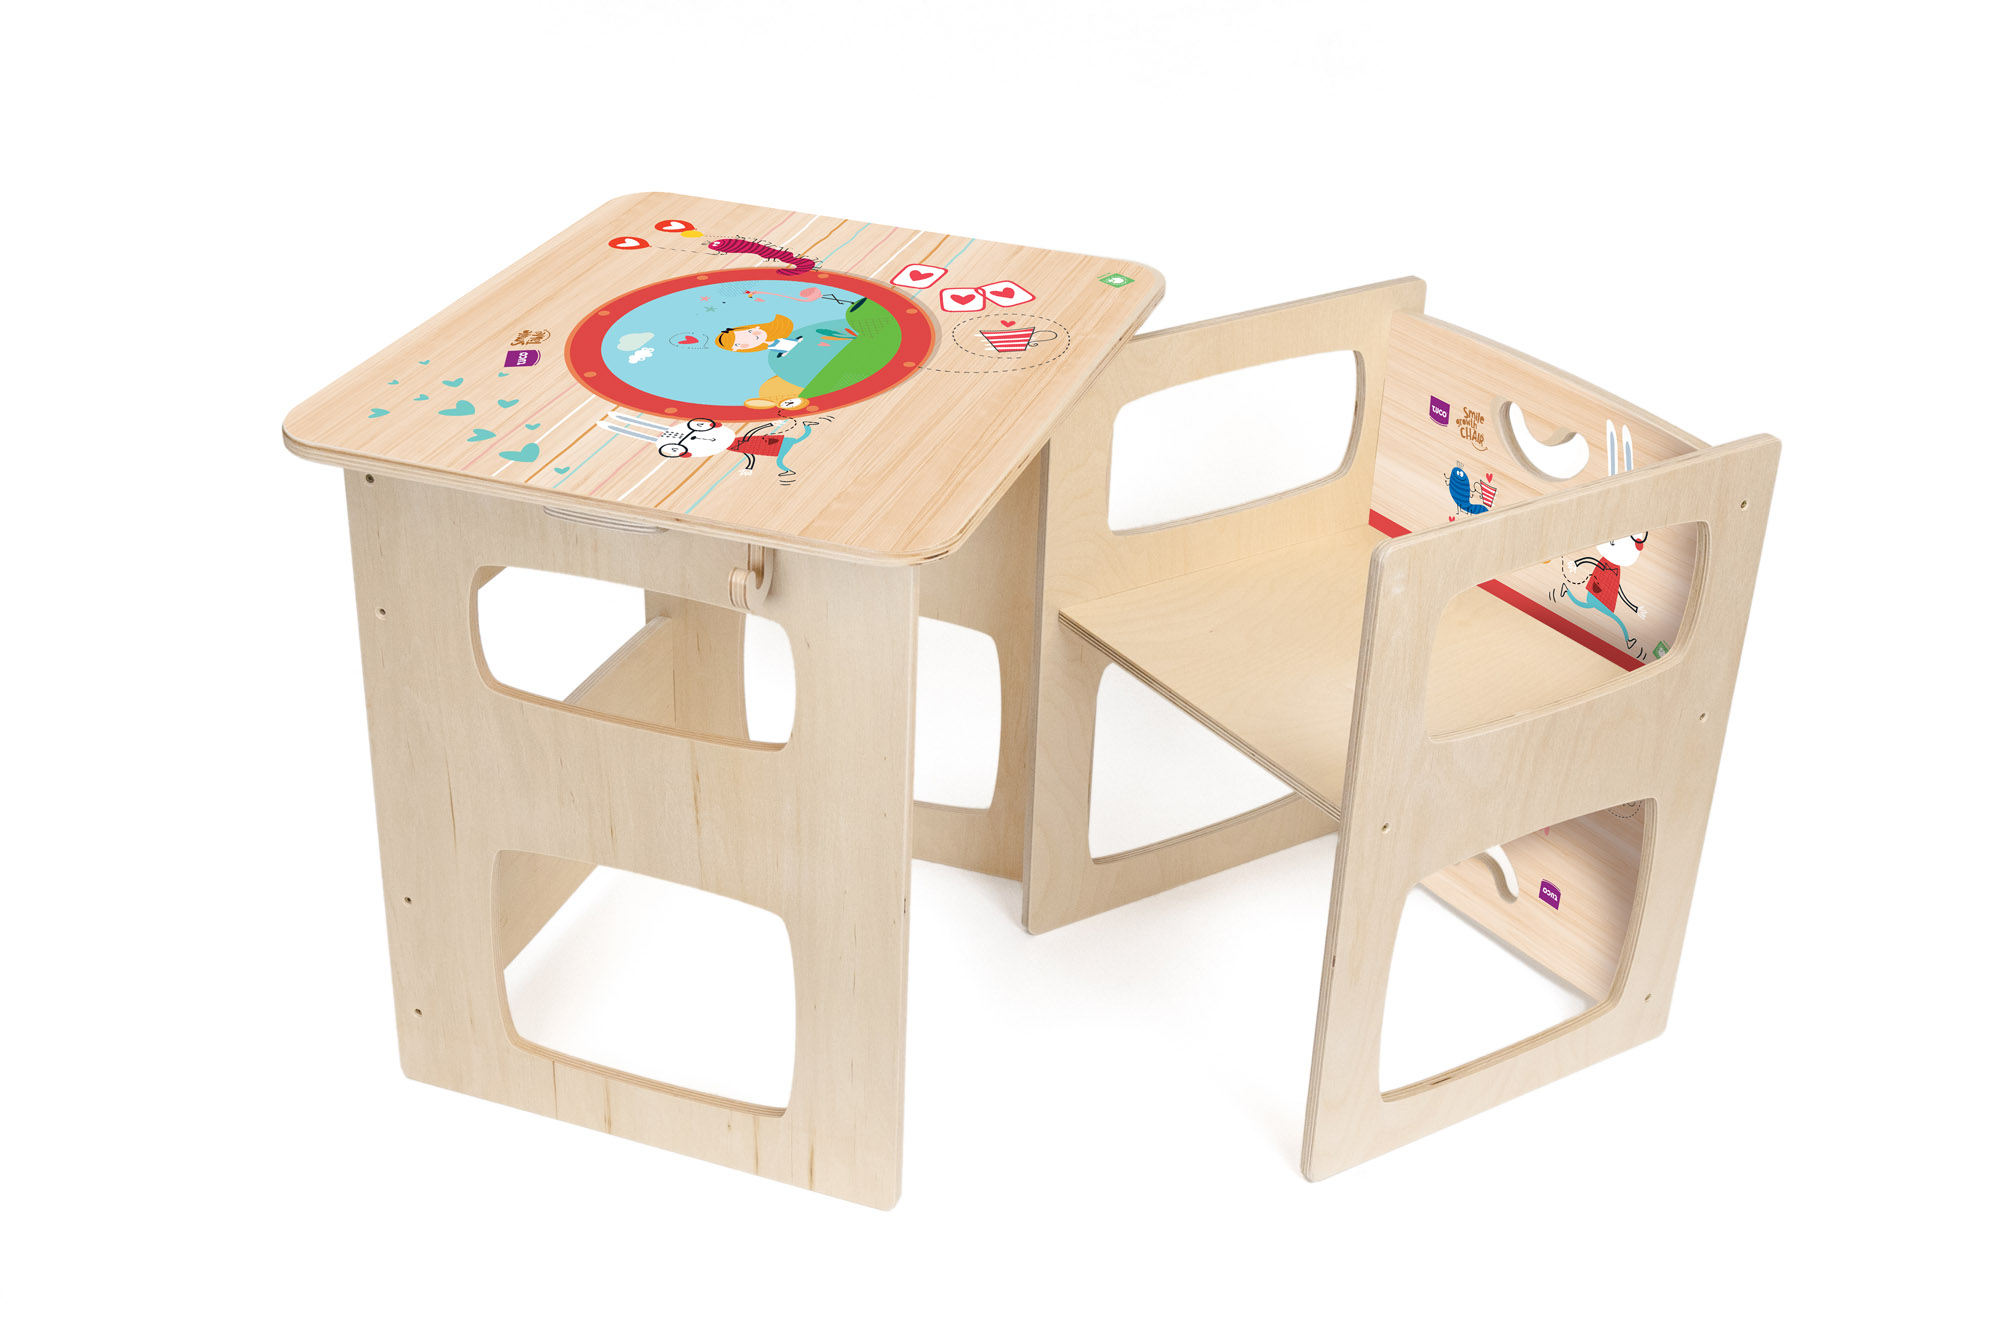 tavolo e sedia montessori, sedia e tavolo montessoriana in legno per bmabini, colorata e stampata